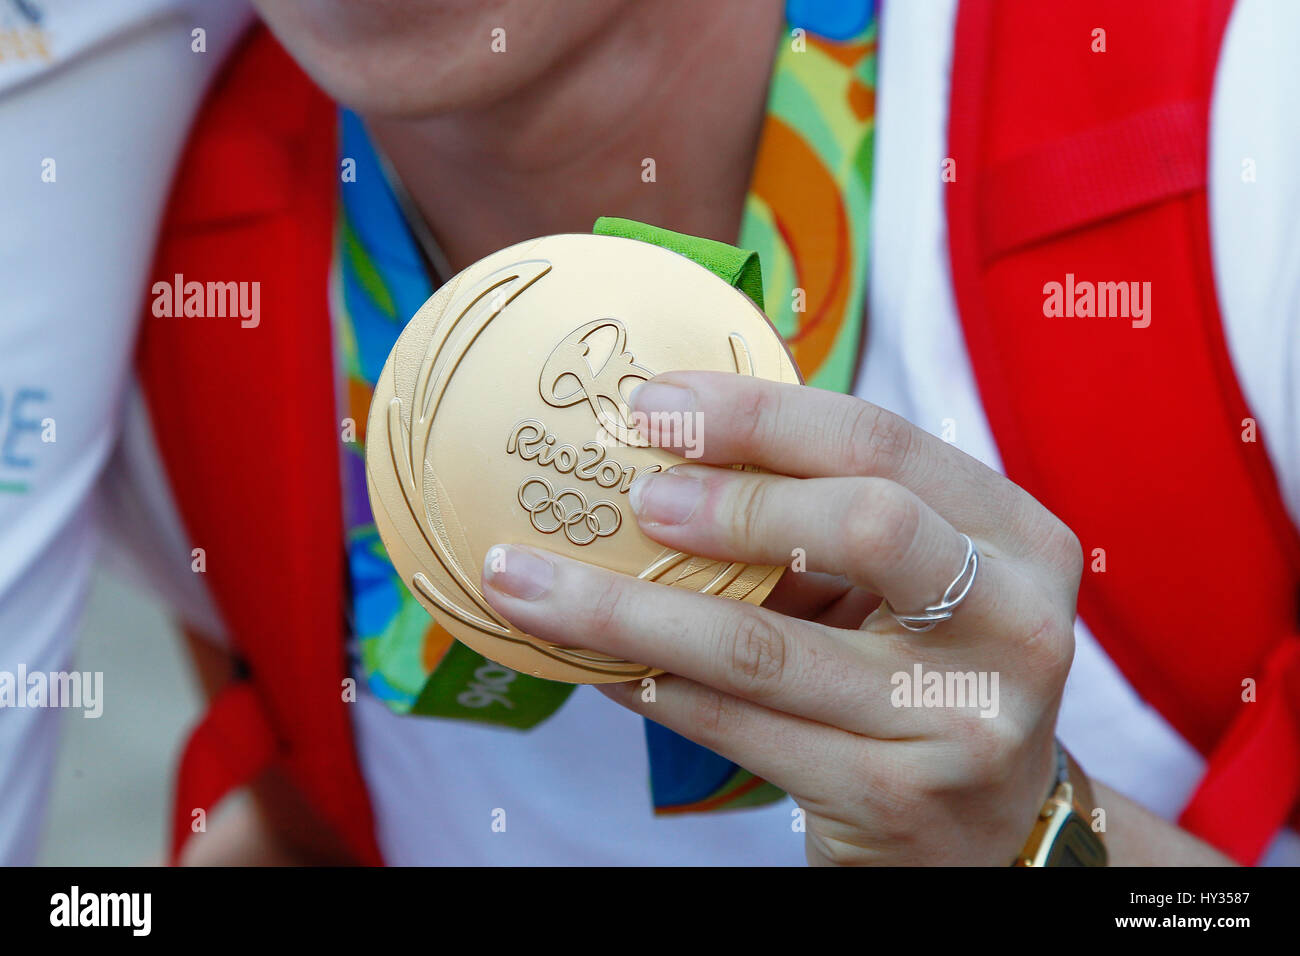 Sport, Jeux Olympiques, médaille d'or de l'athlète holding de 2016 Jeux de Rio. Banque D'Images